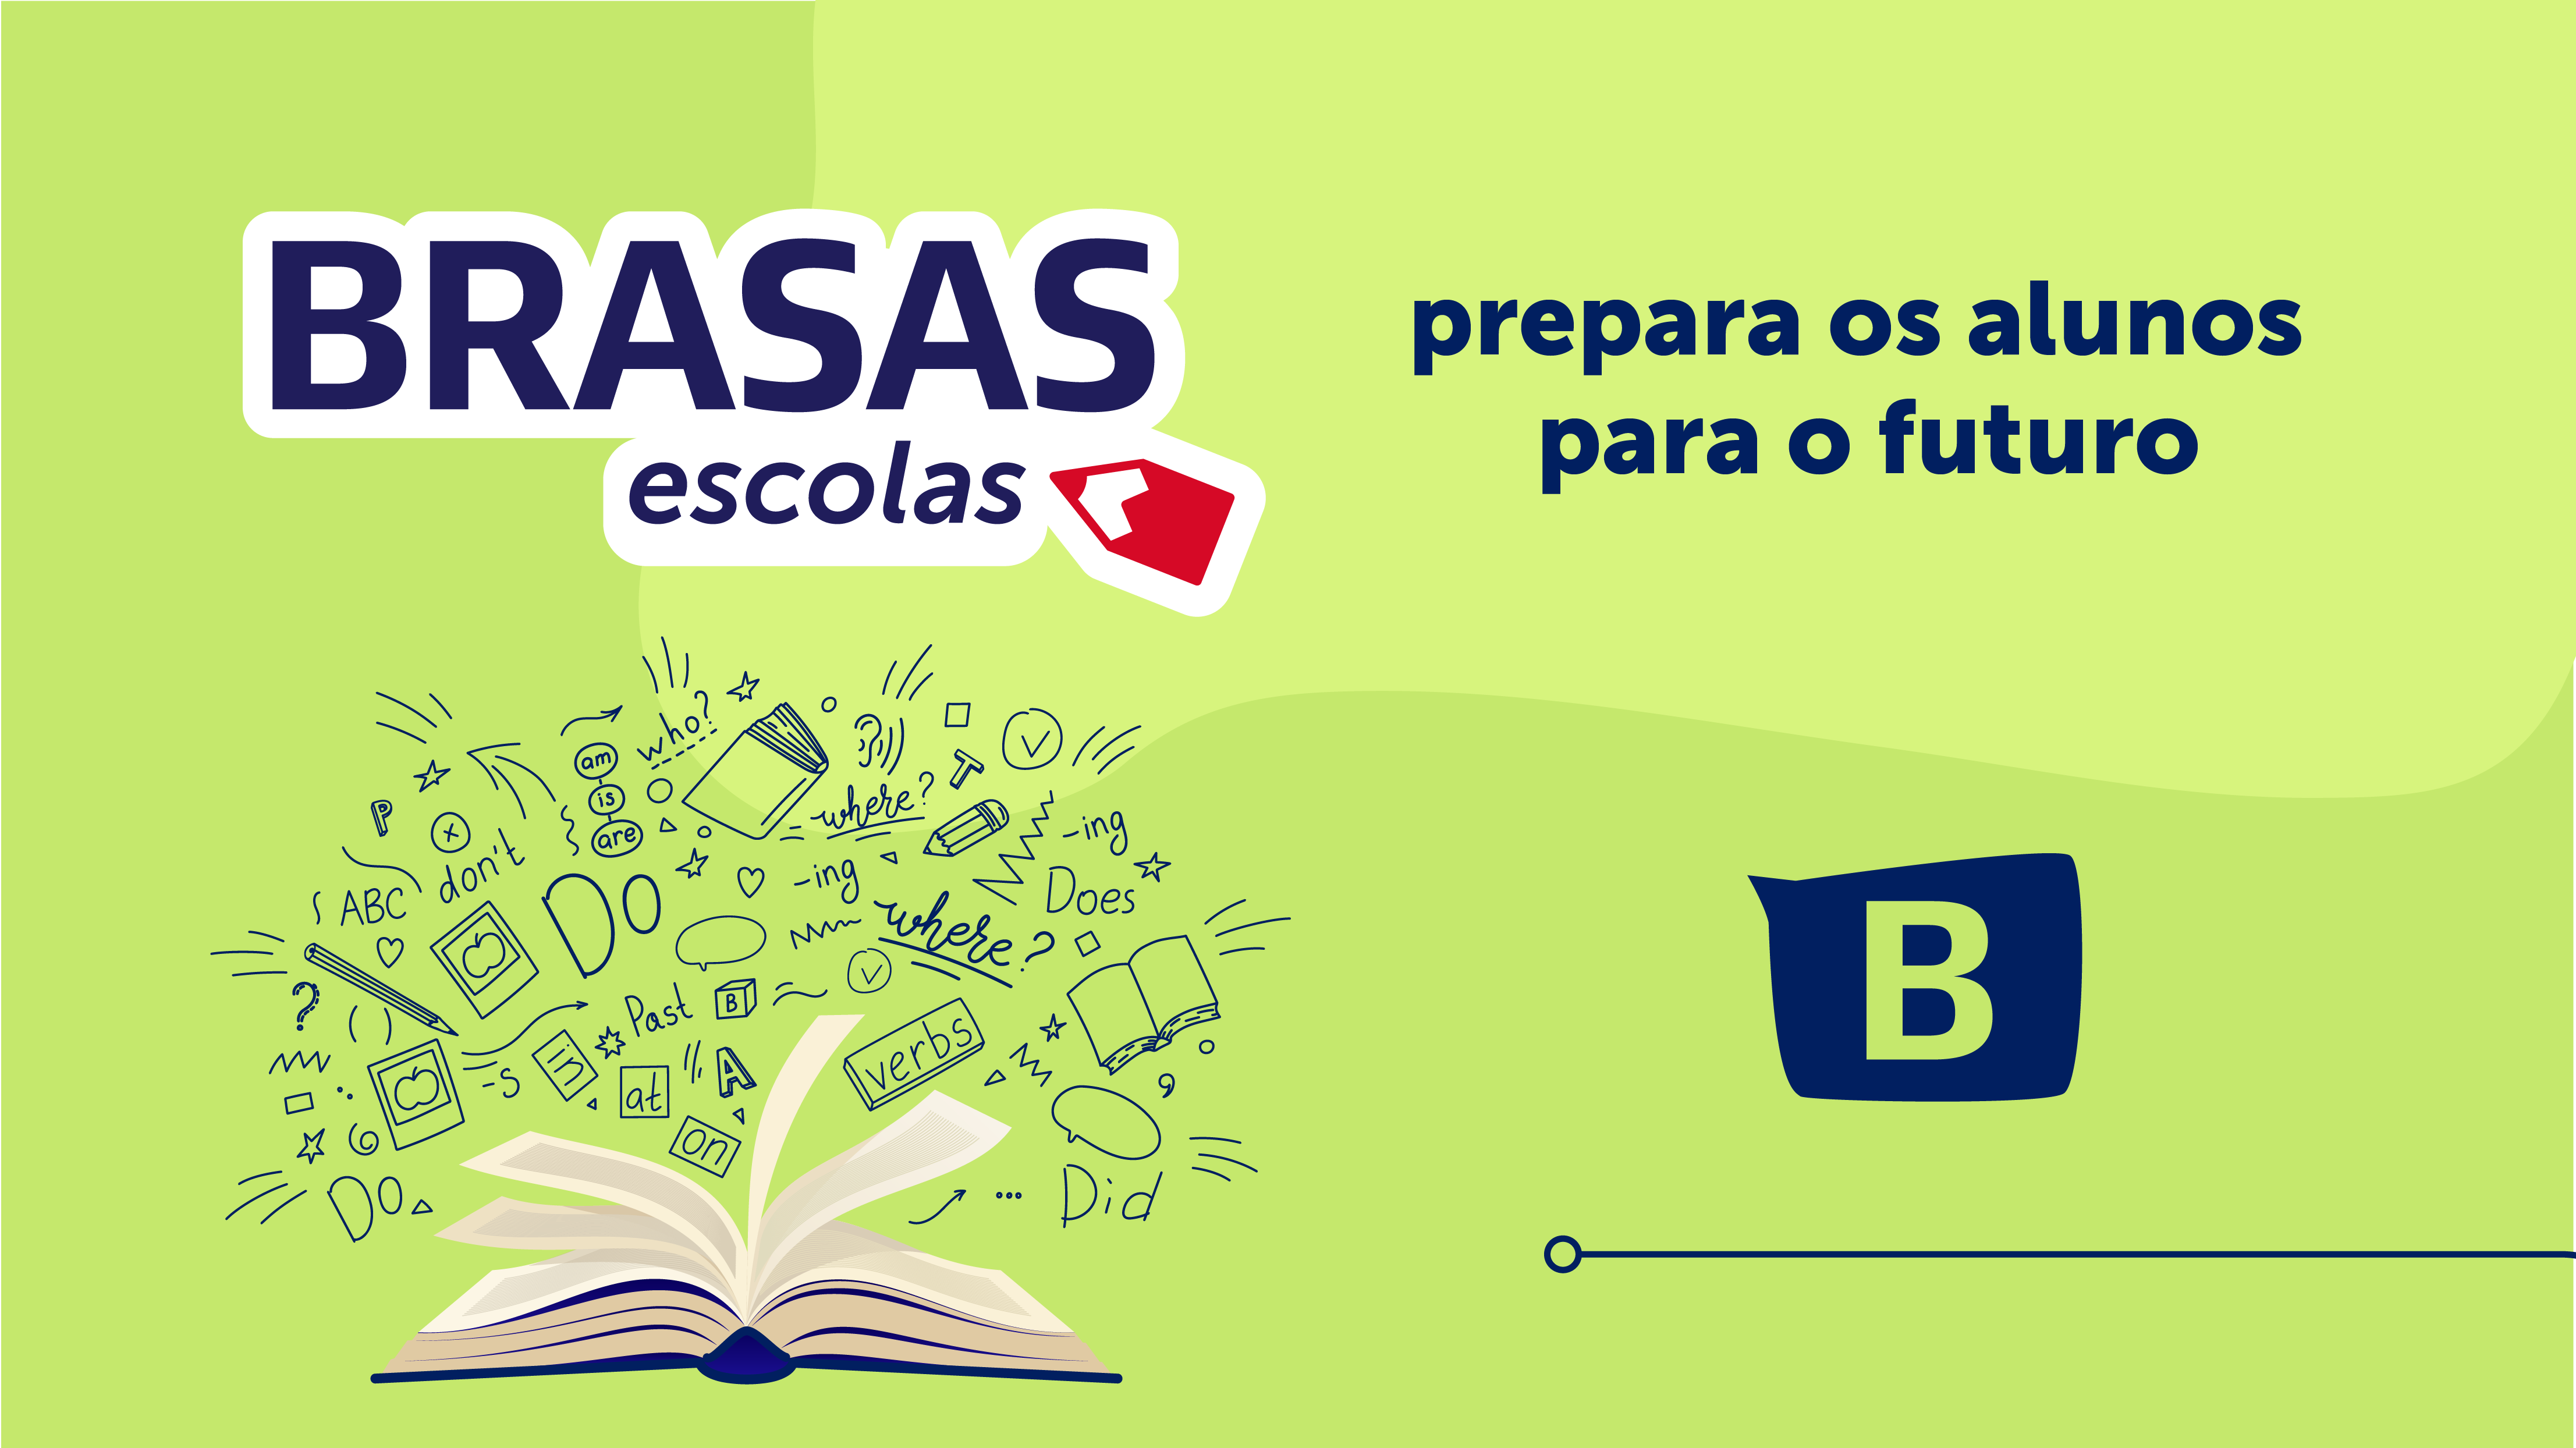 O BRASAS Escolas prepara os alunos para o futuro 1